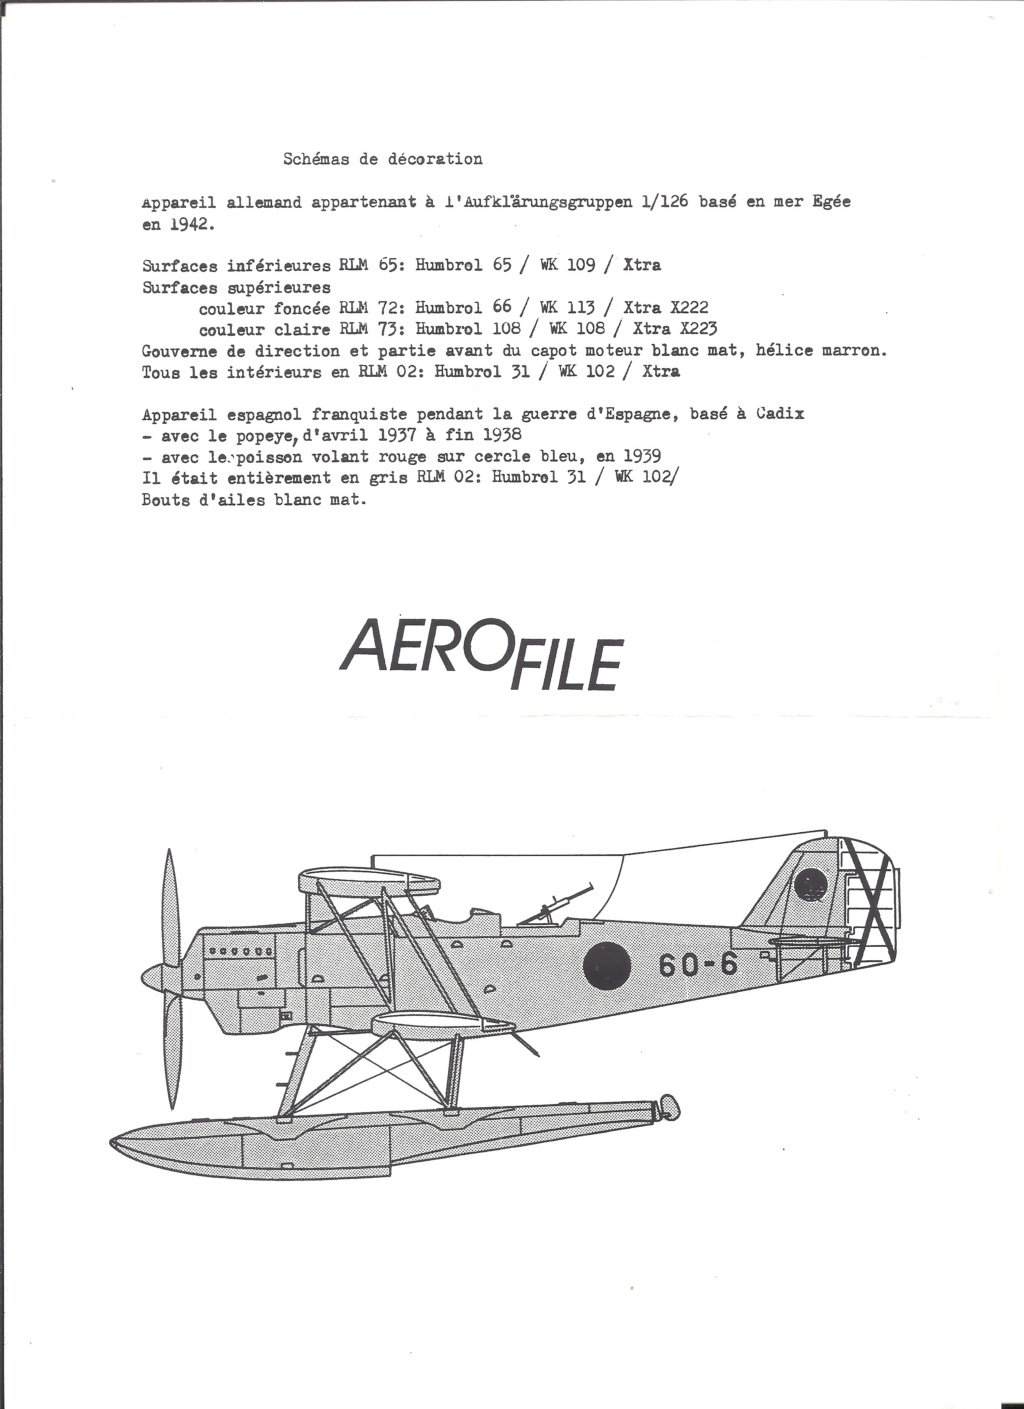 [AEROFILE] HEINKEL He 60 1/72ème Réf ?  Aerofi14